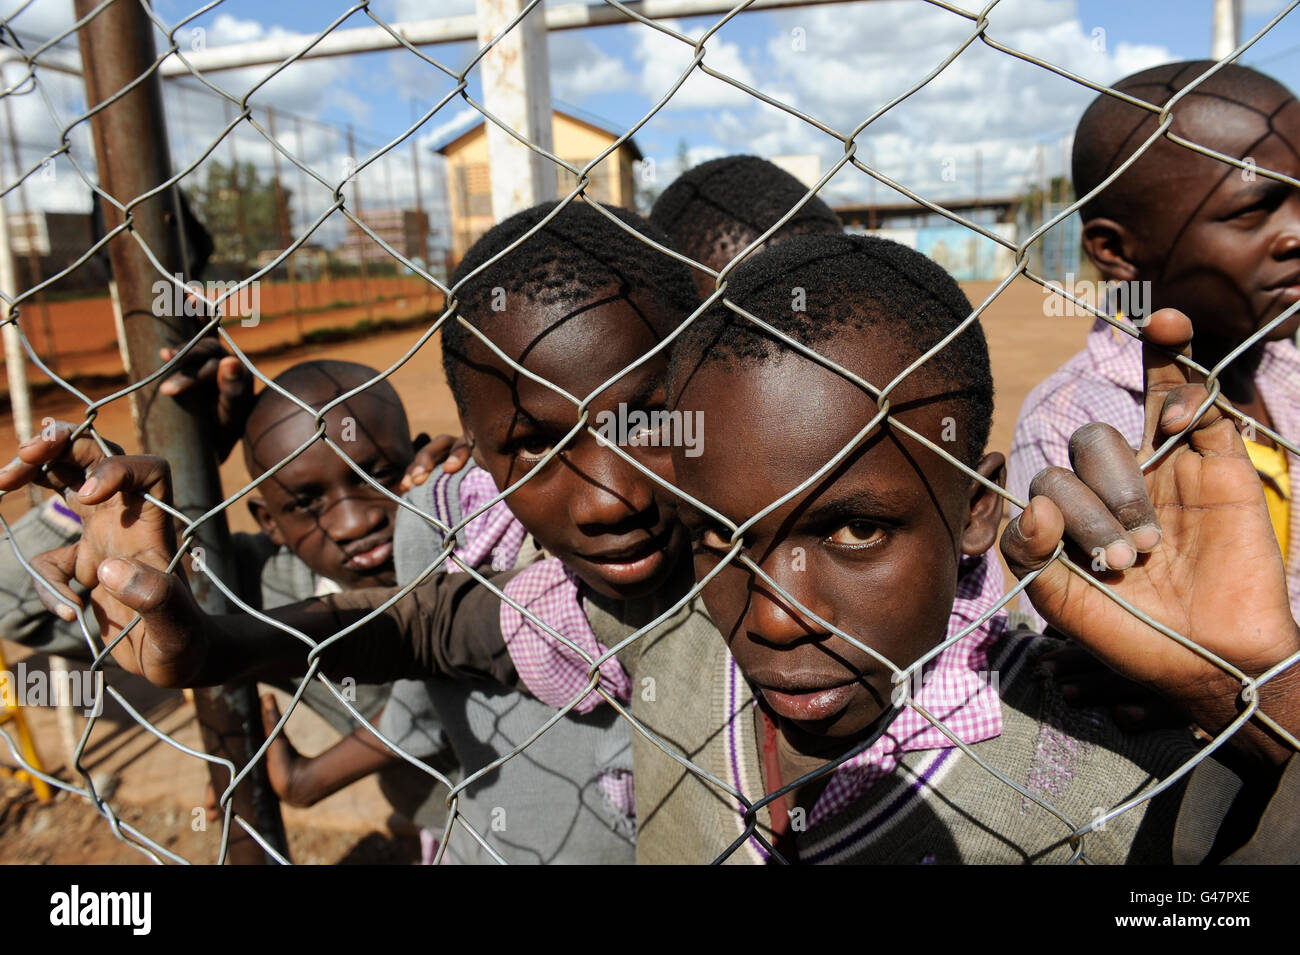 Kenia Nairobi Korogocho, niños en tugurios cancha de deportes de la escuela / Kenia Nairobi Korogocho, tugurios Kinder auf dem Sportplatz einer Schule Foto de stock